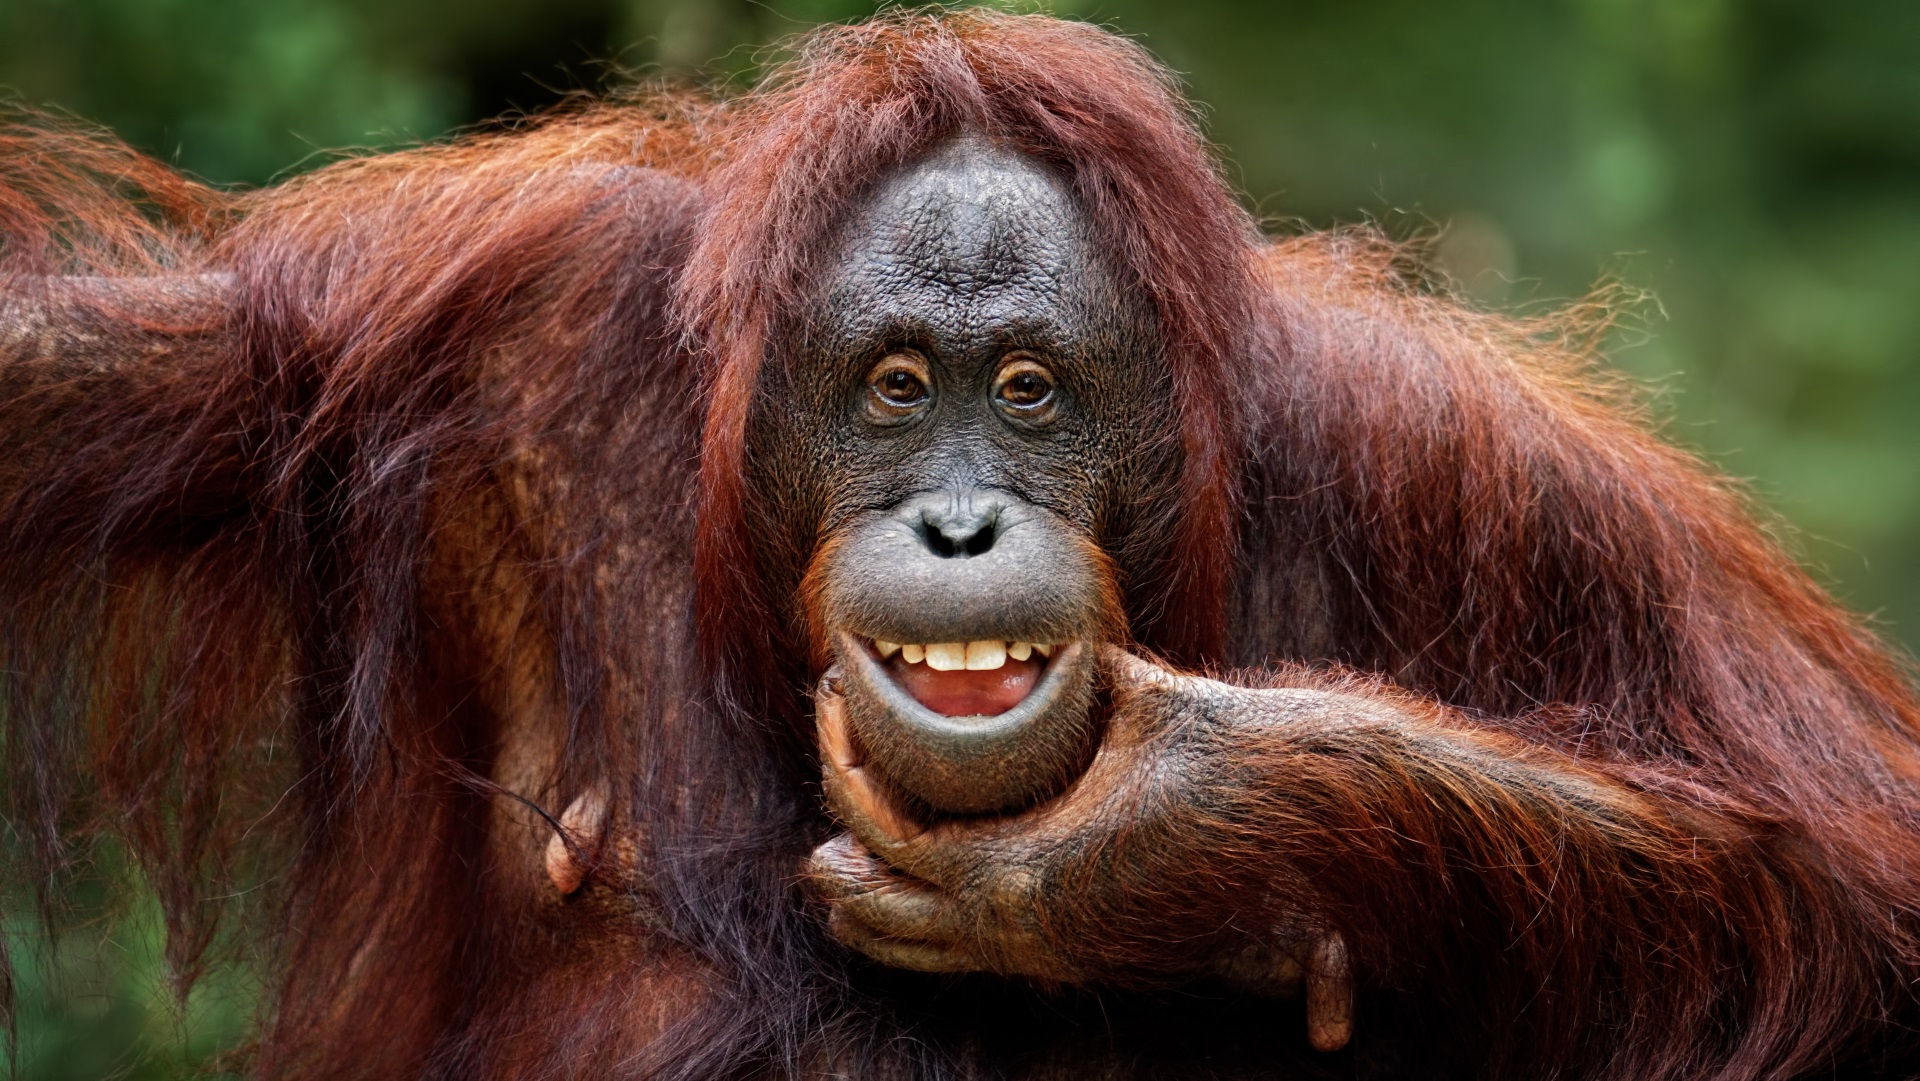 <p><strong>Борнейски орангутан</strong></p>

<p><u>Статус: критично застрашен</u></p>

<p>През последните 60 години популацията на борнейските орангутани е намаляла с 50%. Орангутаните в Северозападния Борней са най-застрашени поради обезлесяването и лова. Сега се смята, че са останали само 1500 екземпляра.</p>